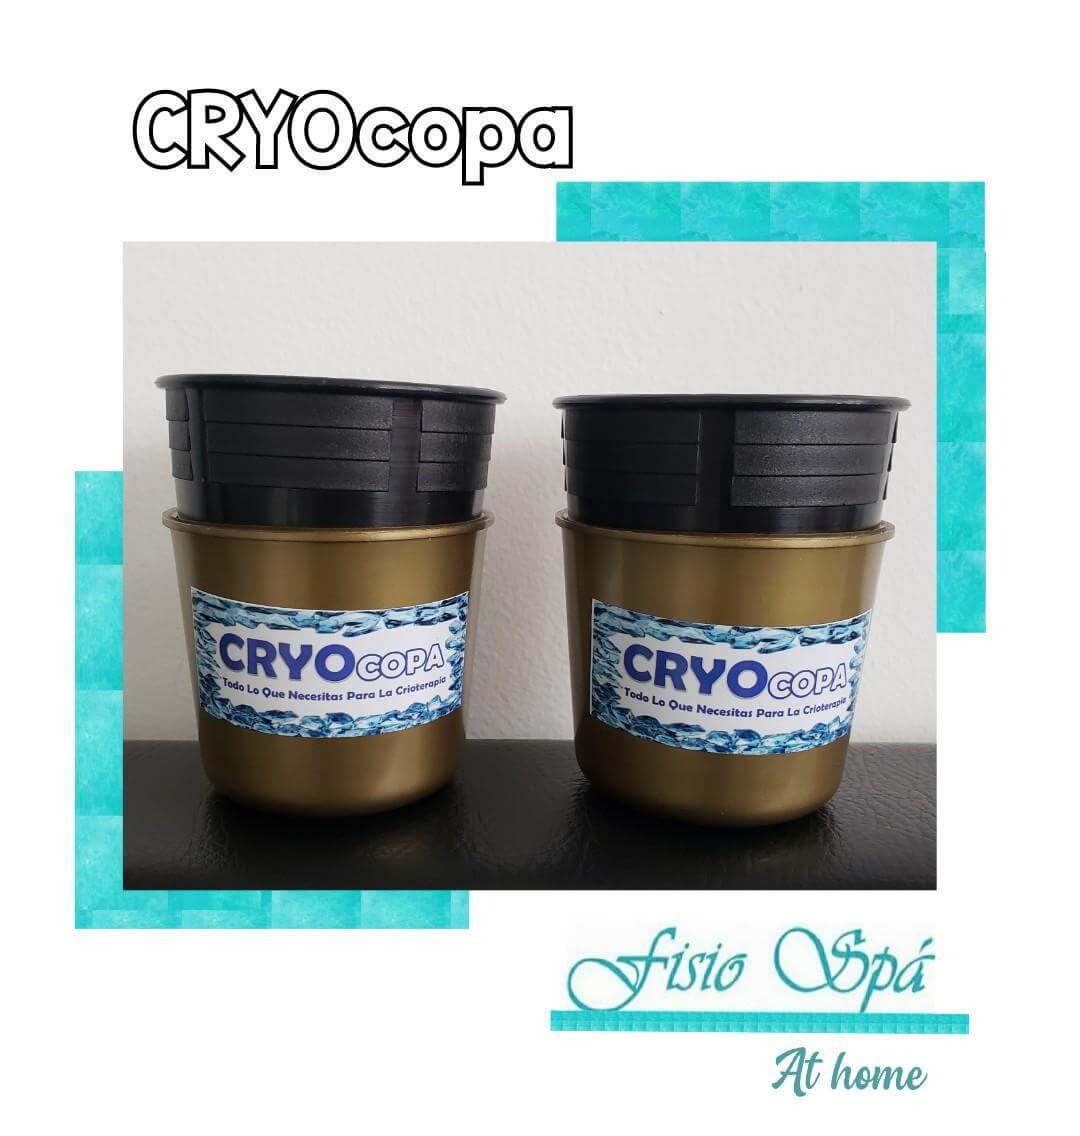 Cryocopa